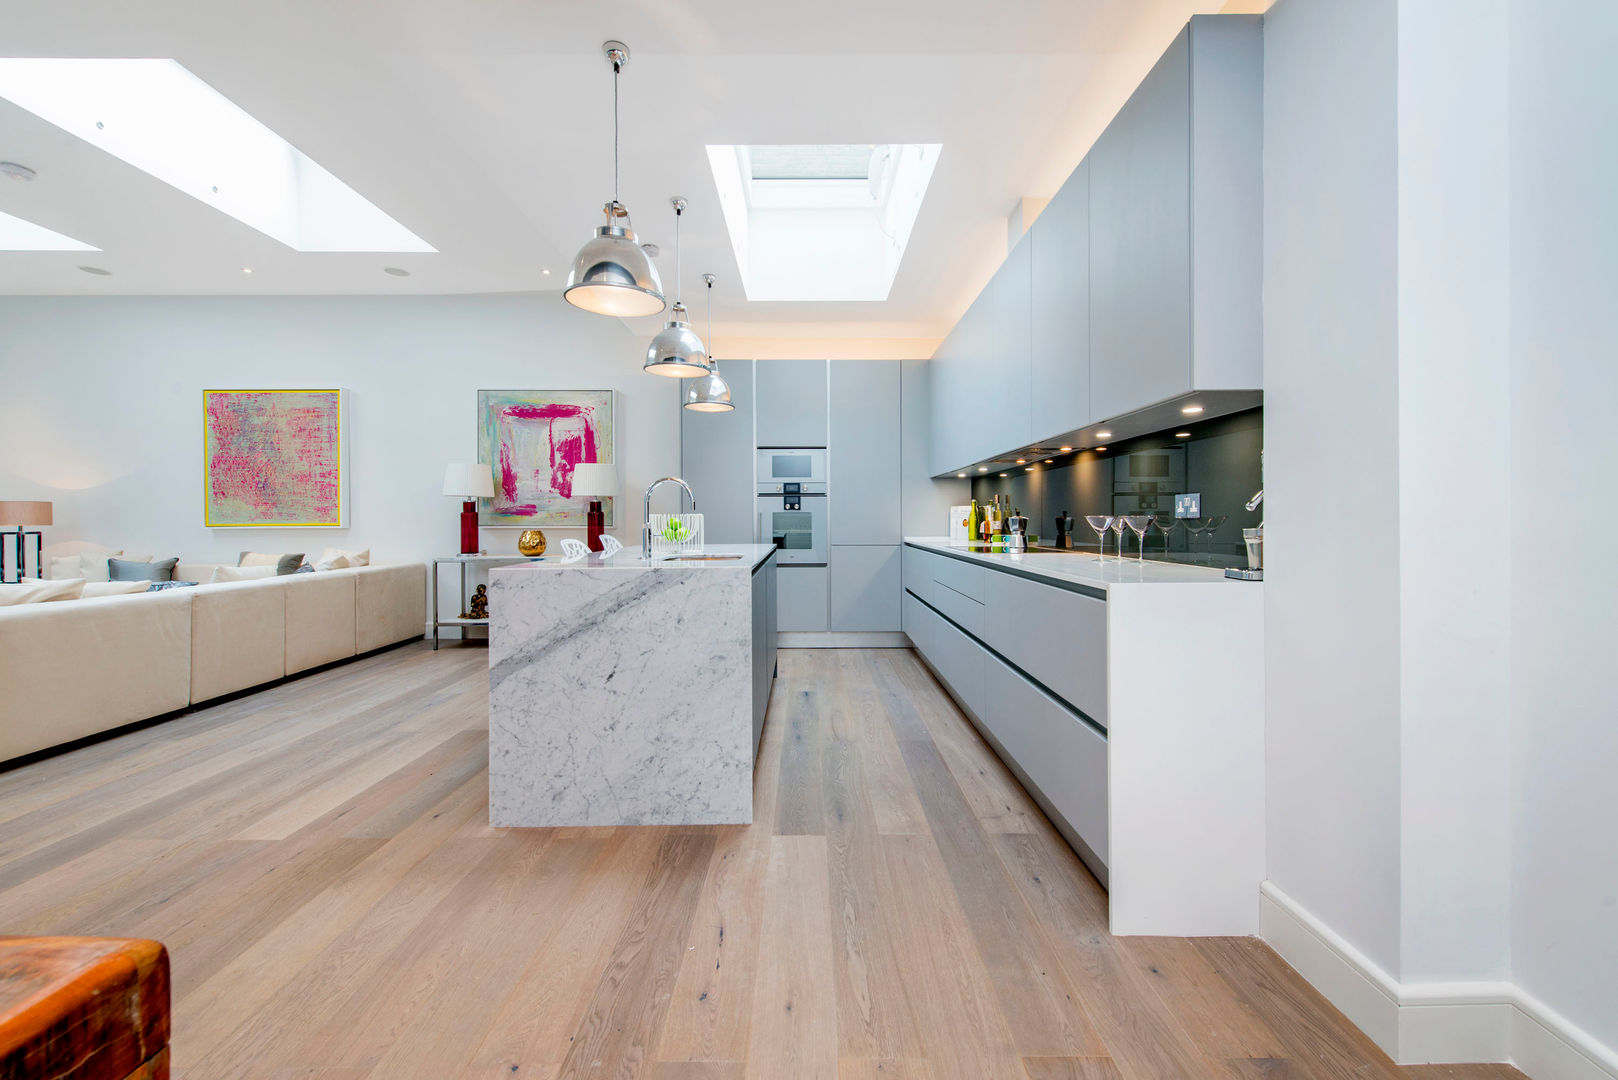 kitchen Balance Property Ltd Cocinas modernas: Ideas, imágenes y decoración